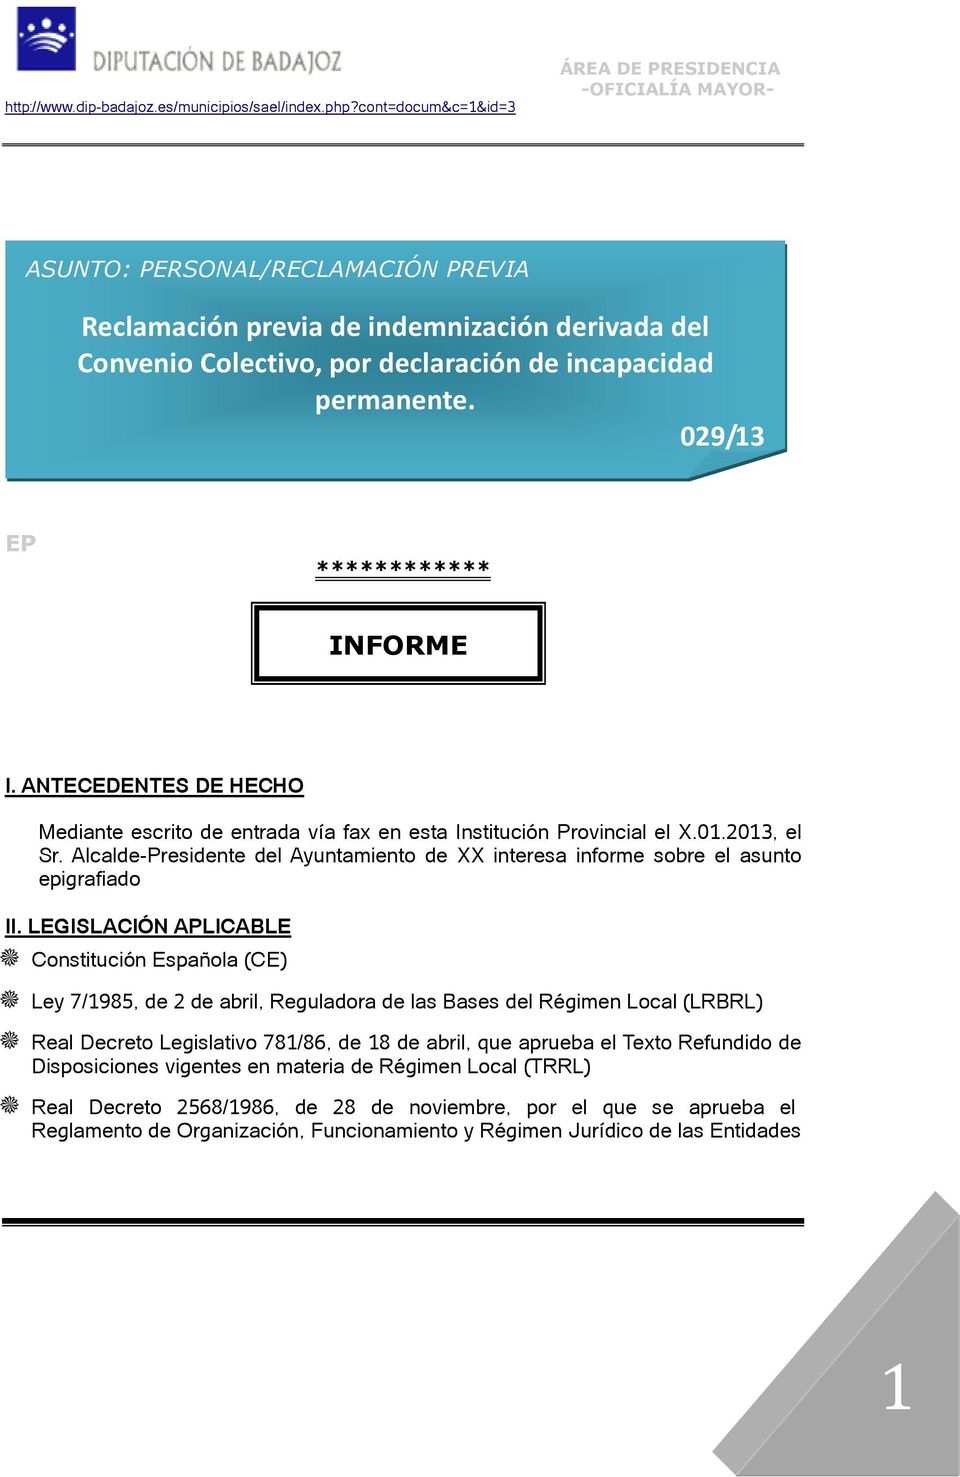 LEGISLACIÓN APLICABLE Constitución Española (CE) Ley 7/1985, de 2 de abril, Reguladora de las Bases del Régimen Local (LRBRL) Real Decreto Legislativo 781/86, de 18 de abril, que aprueba el Texto